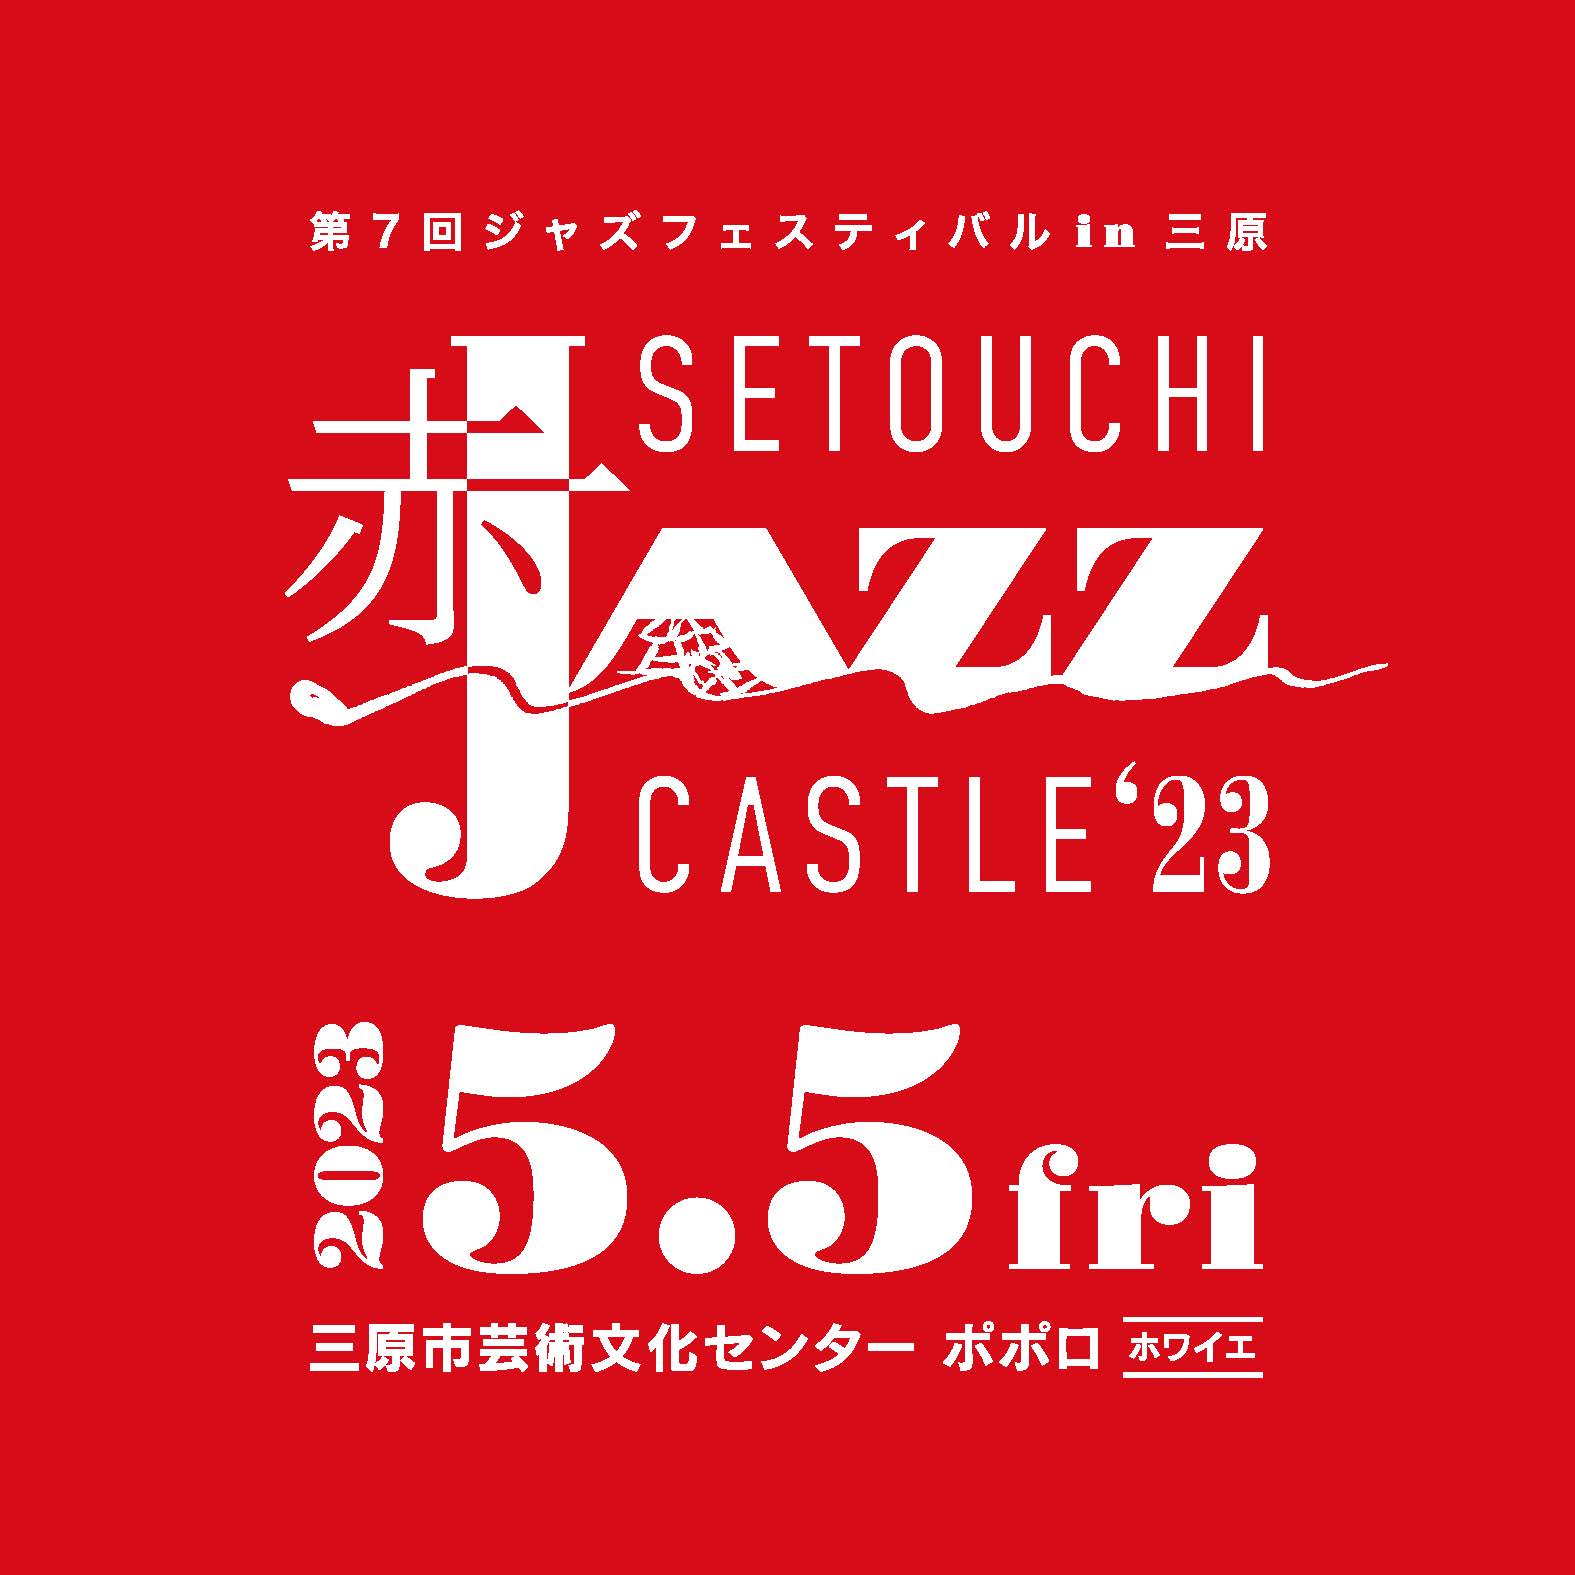 SETOUCHI “赤” JAZZ CASTLE '23 - 広島県三原市の三原市芸術文化 ...